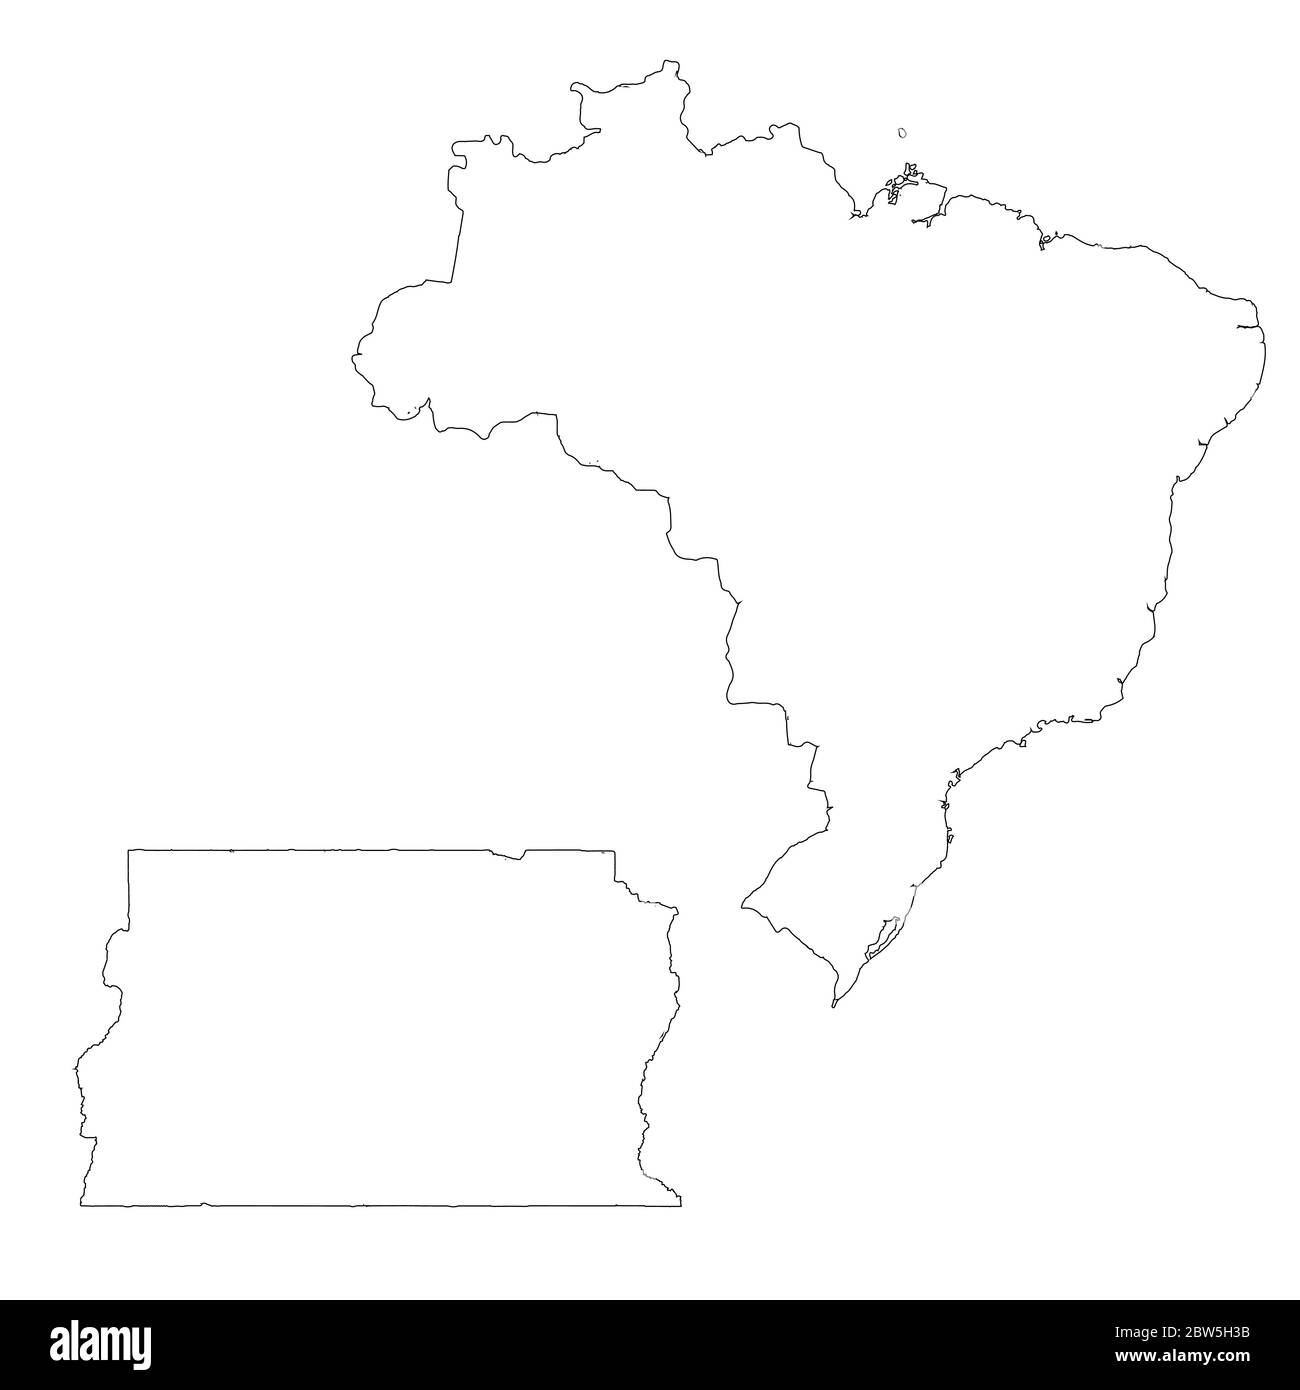 Vektorkarte Brasilien und Brasilia. Land und Hauptstadt. Isolierte Vektorgrafik. Übersicht. EPS 10-Abbildung. Stock Vektor